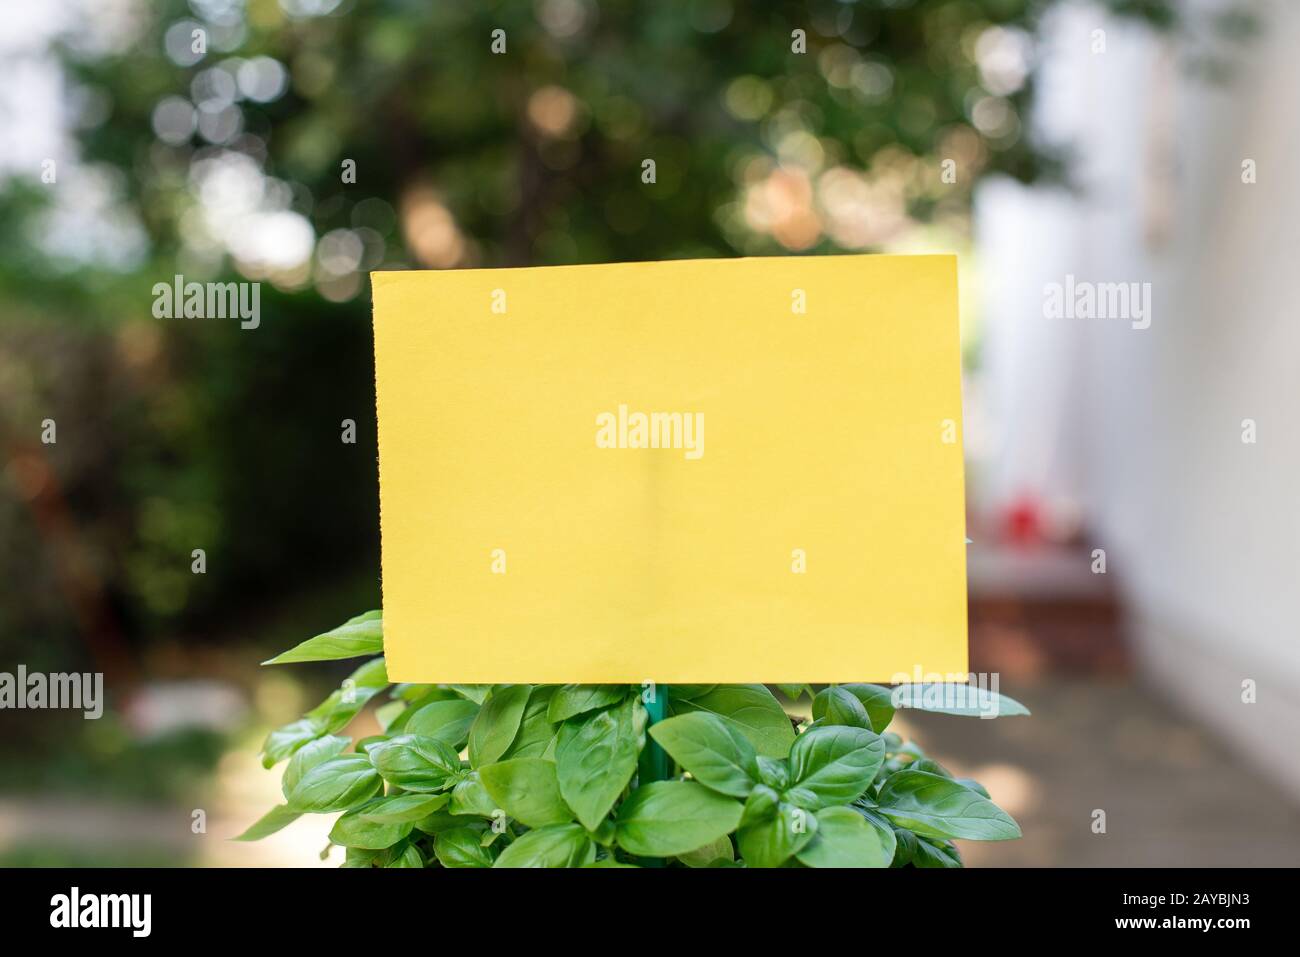 Cartoncino di carta comune attaccato ad un bastone e inserito nelle piante frondosi. Il foglio giallo vuoto è posto nelle foglie di verde Foto Stock